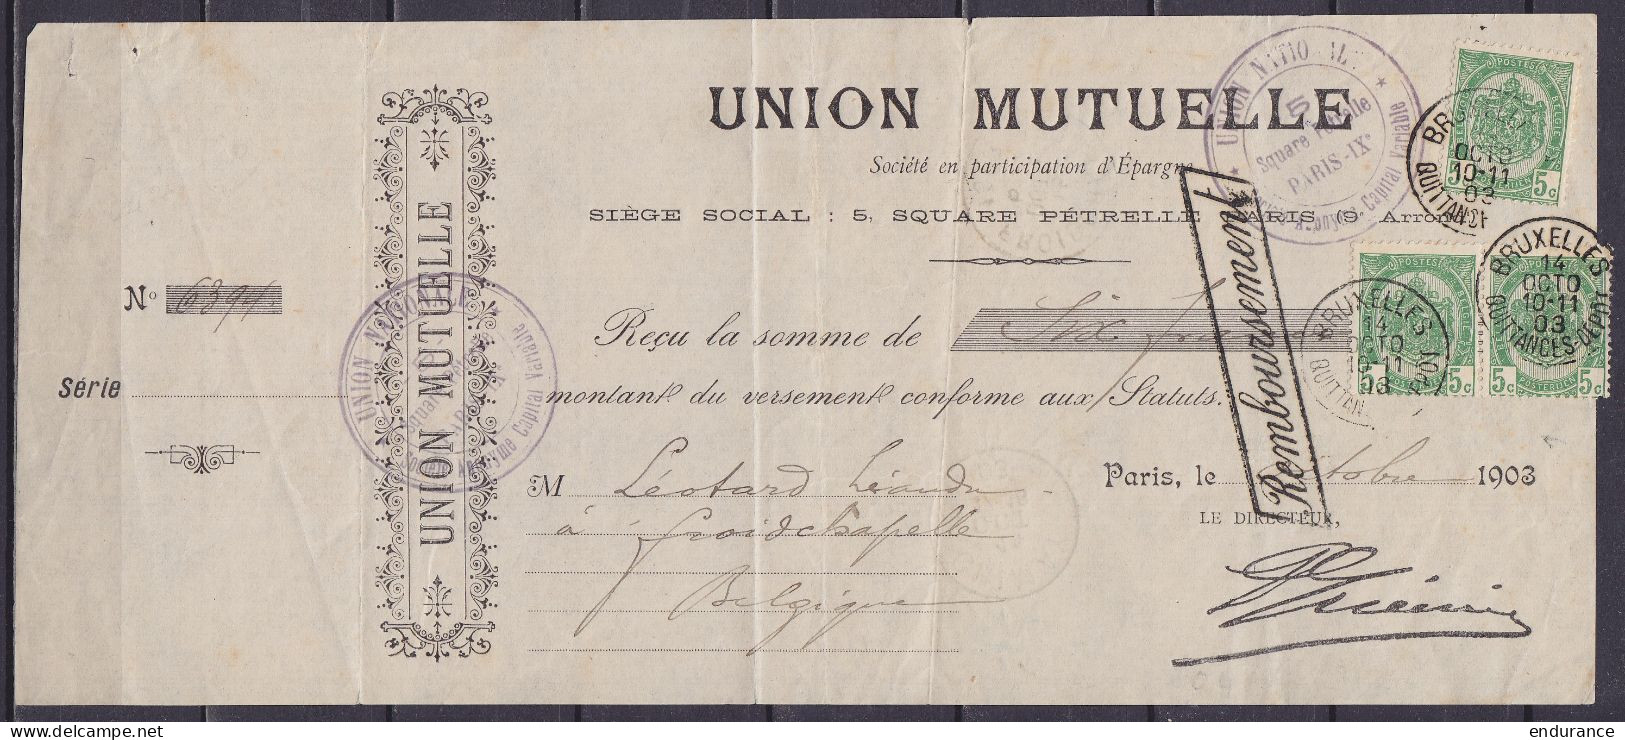 Reçu "Union Mutuelle" Affr. 3x N°56 Càd "BRUXELLES /14 OCTO 1903/ QUITTANCES DEPOT" Pour FROIDCHAPELLE - Griffe [Rembour - 1893-1907 Stemmi